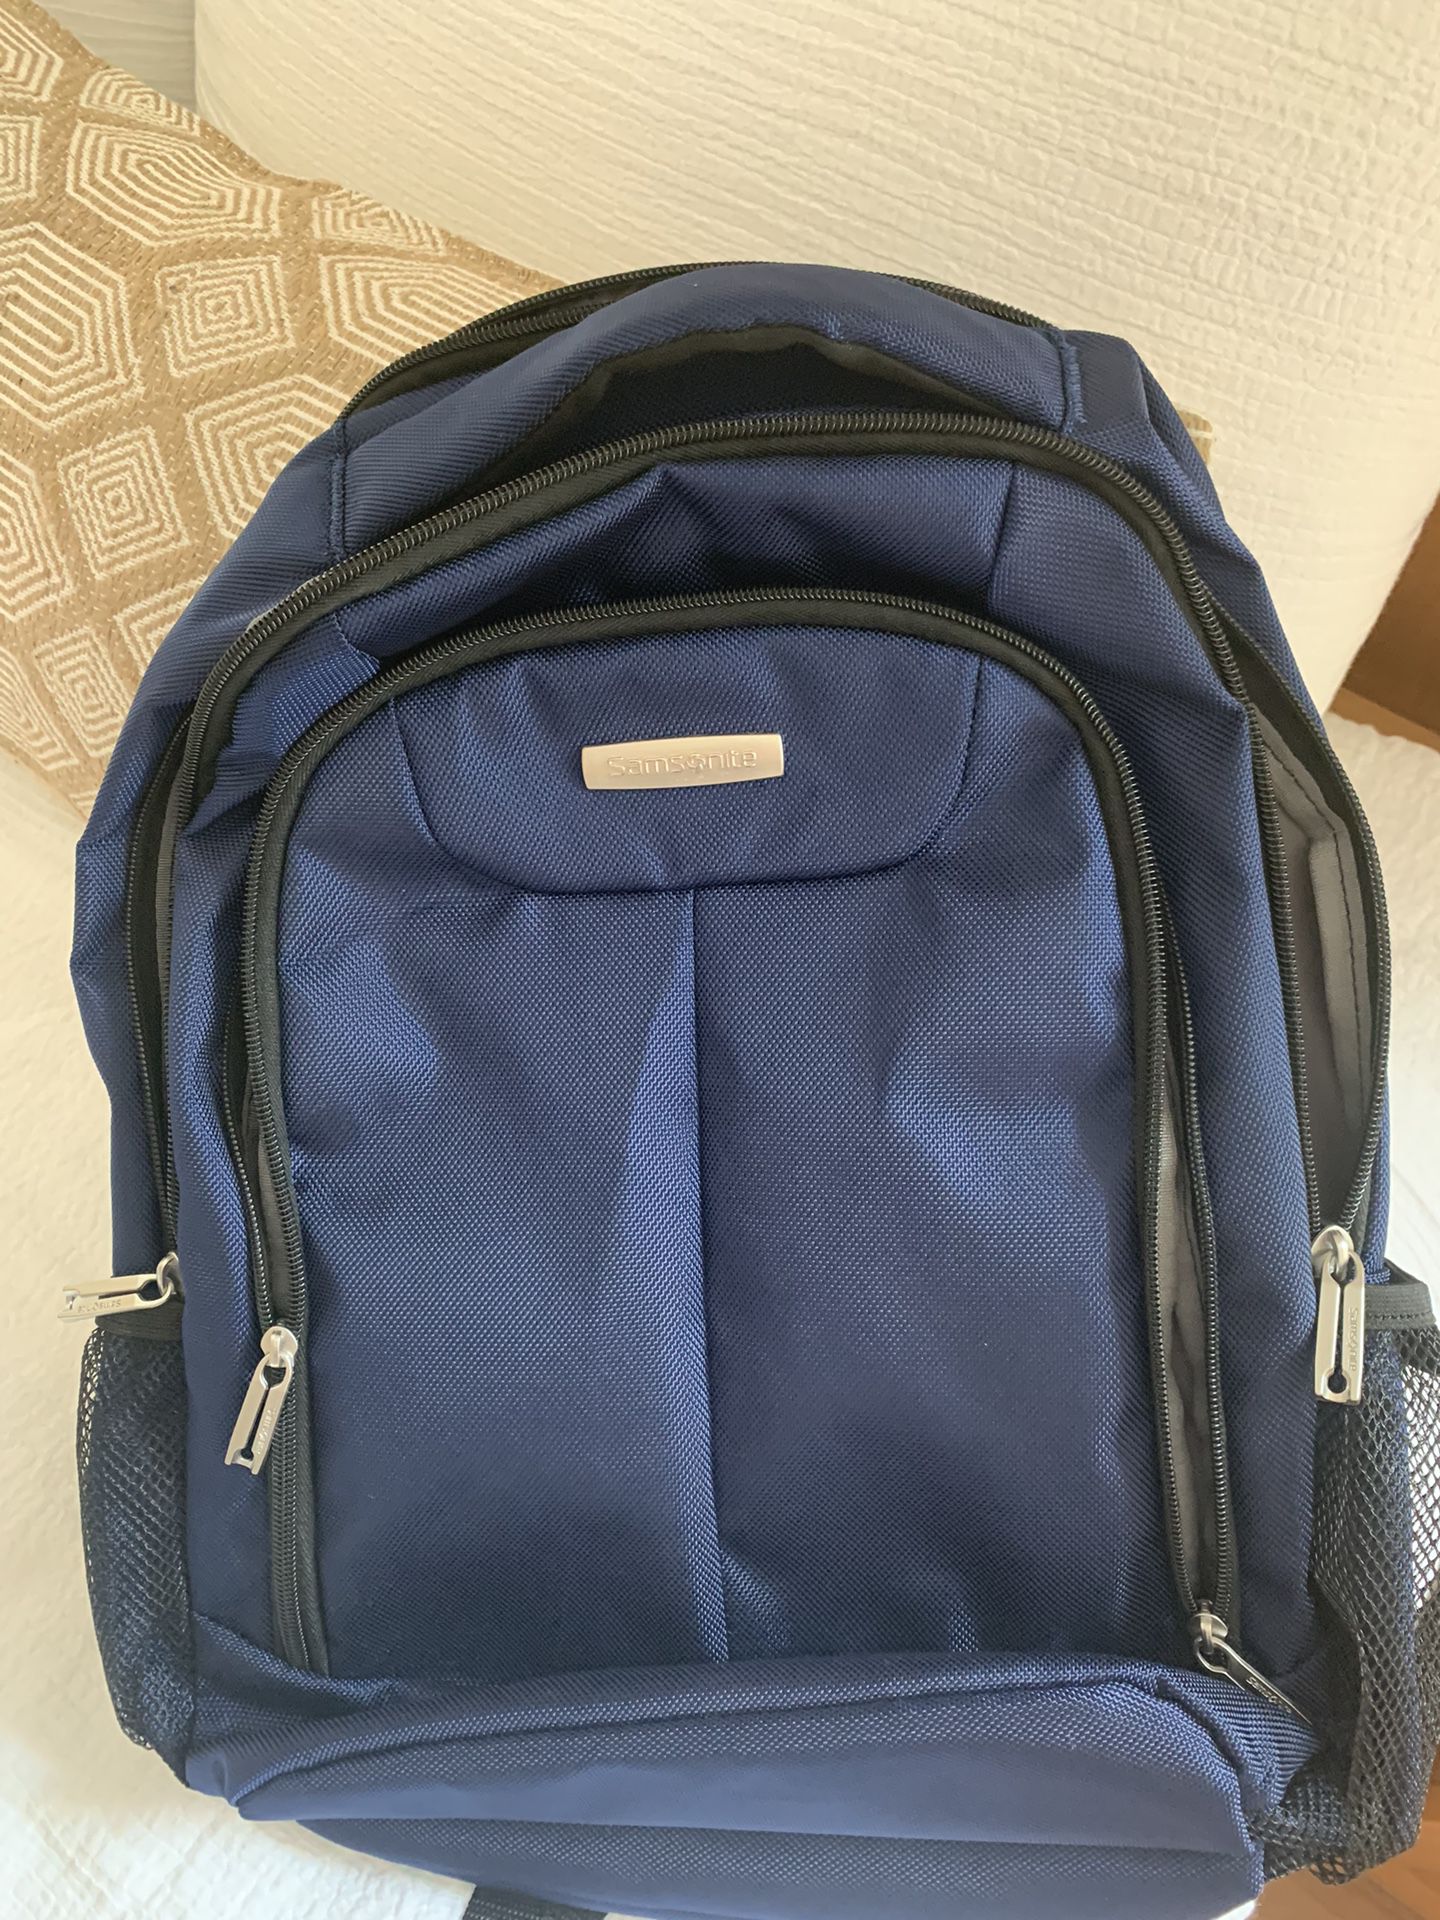 Samsonite Laptop/school backpack - blue